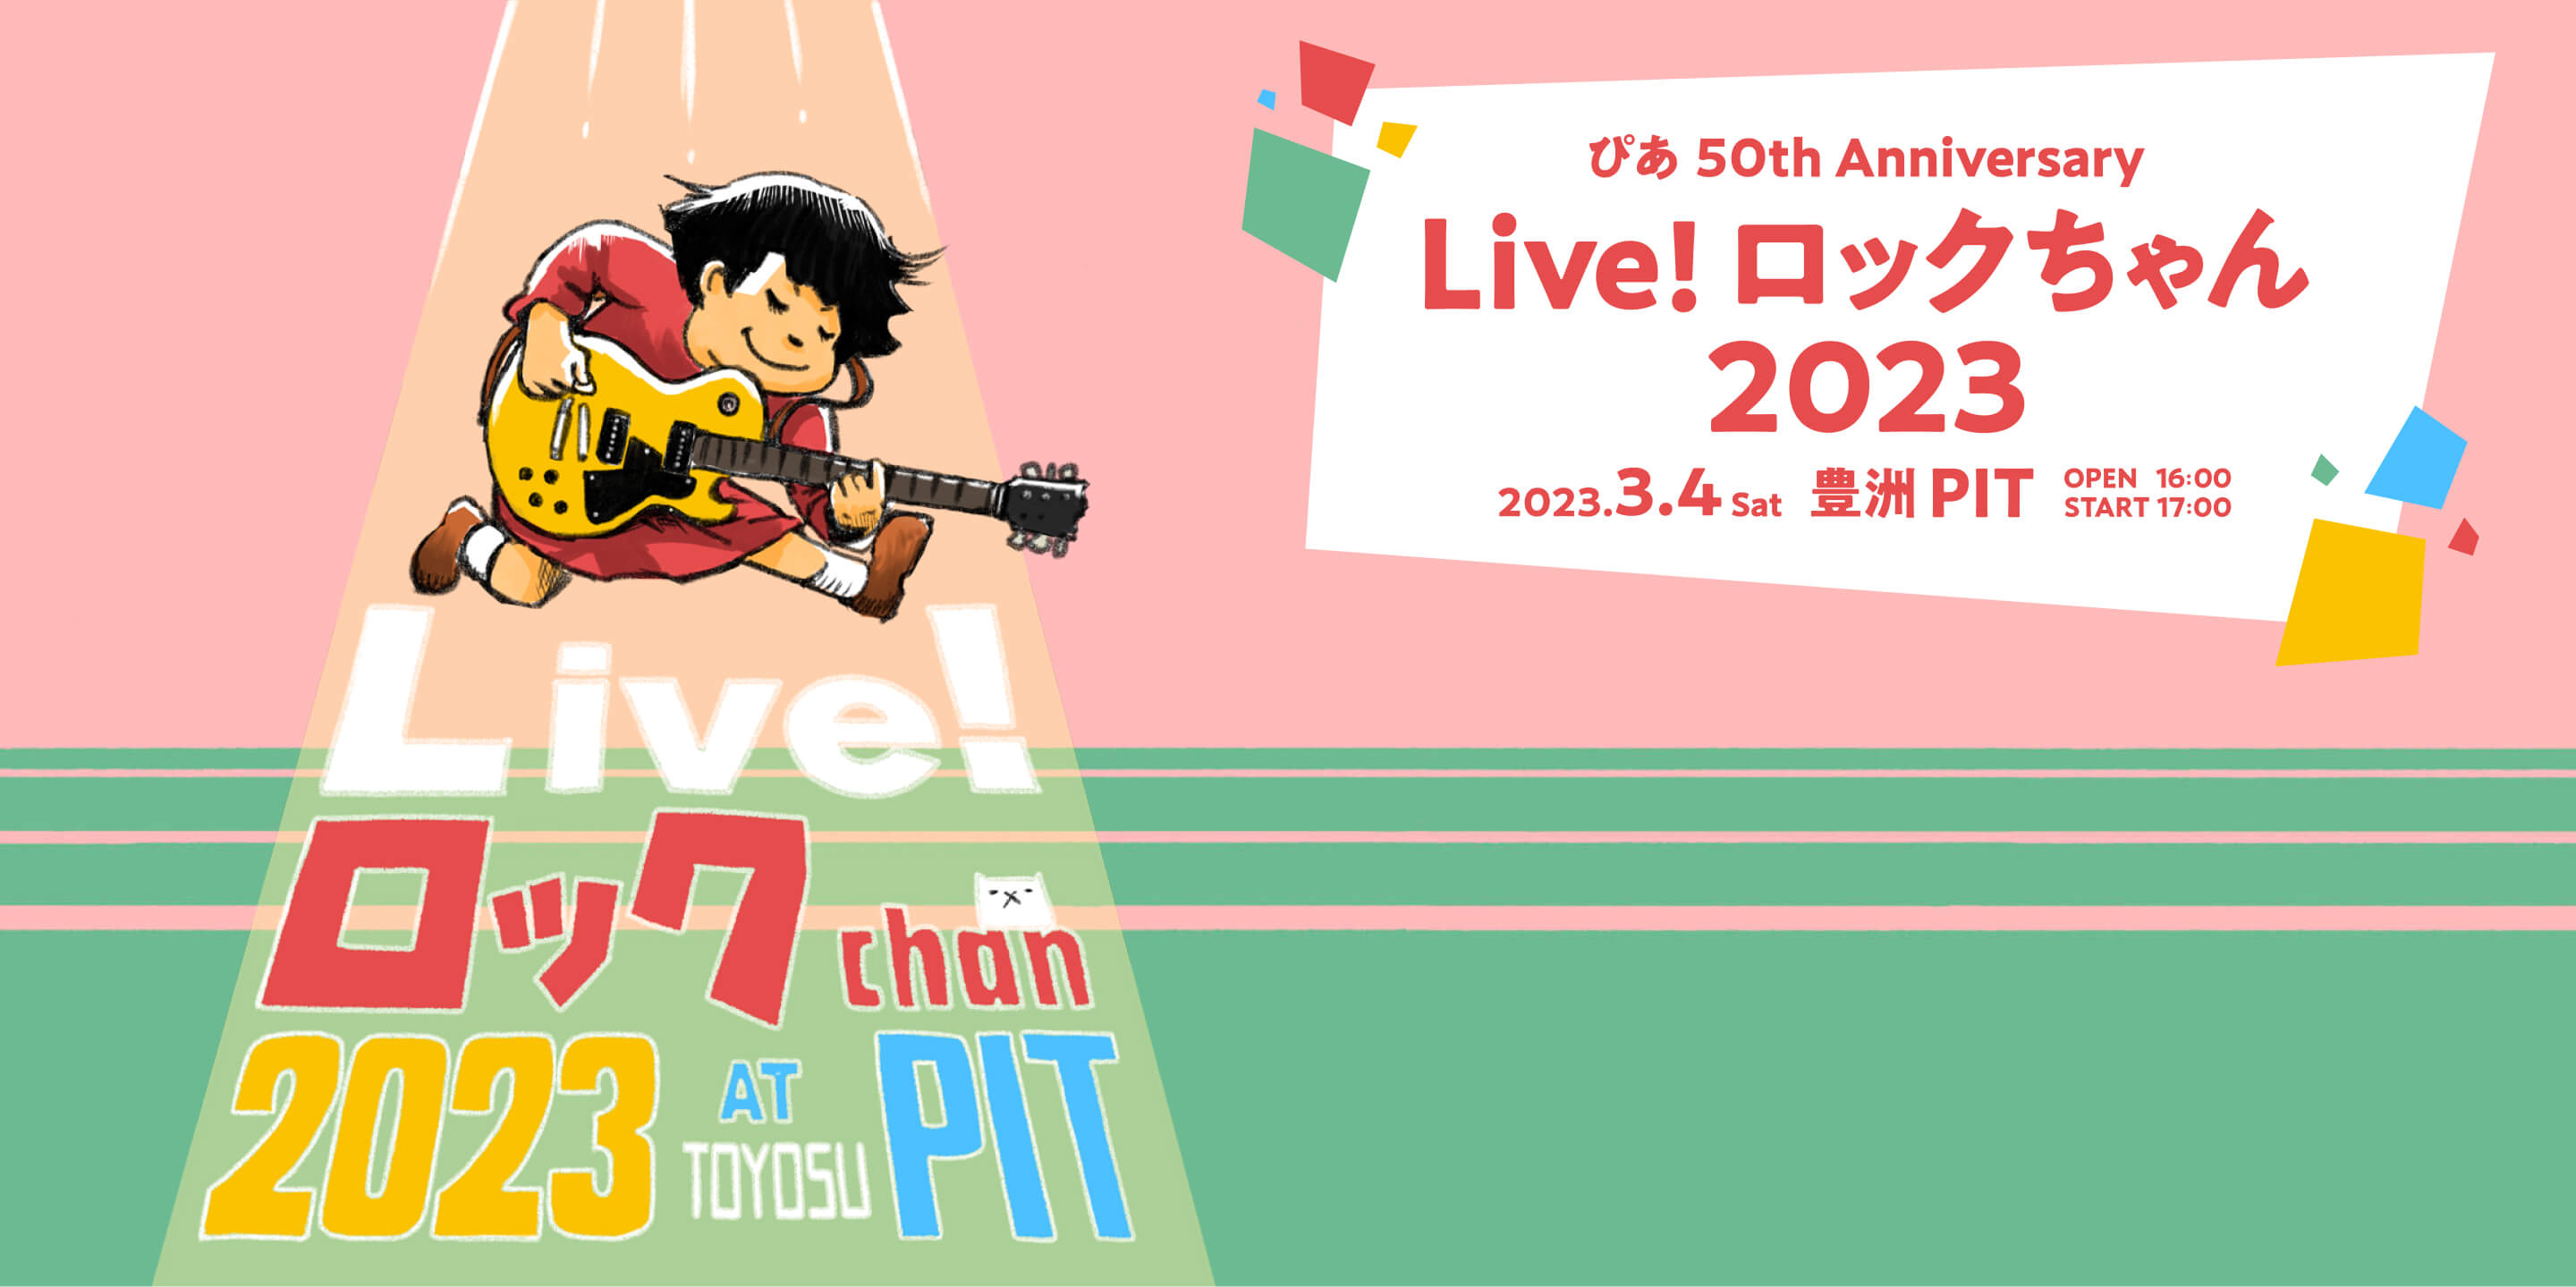 ぴあ 50th Anniversary Live！ロックちゃん2023 2023 3.4sat 豊洲PIT OPEN 16:00 START 17:00